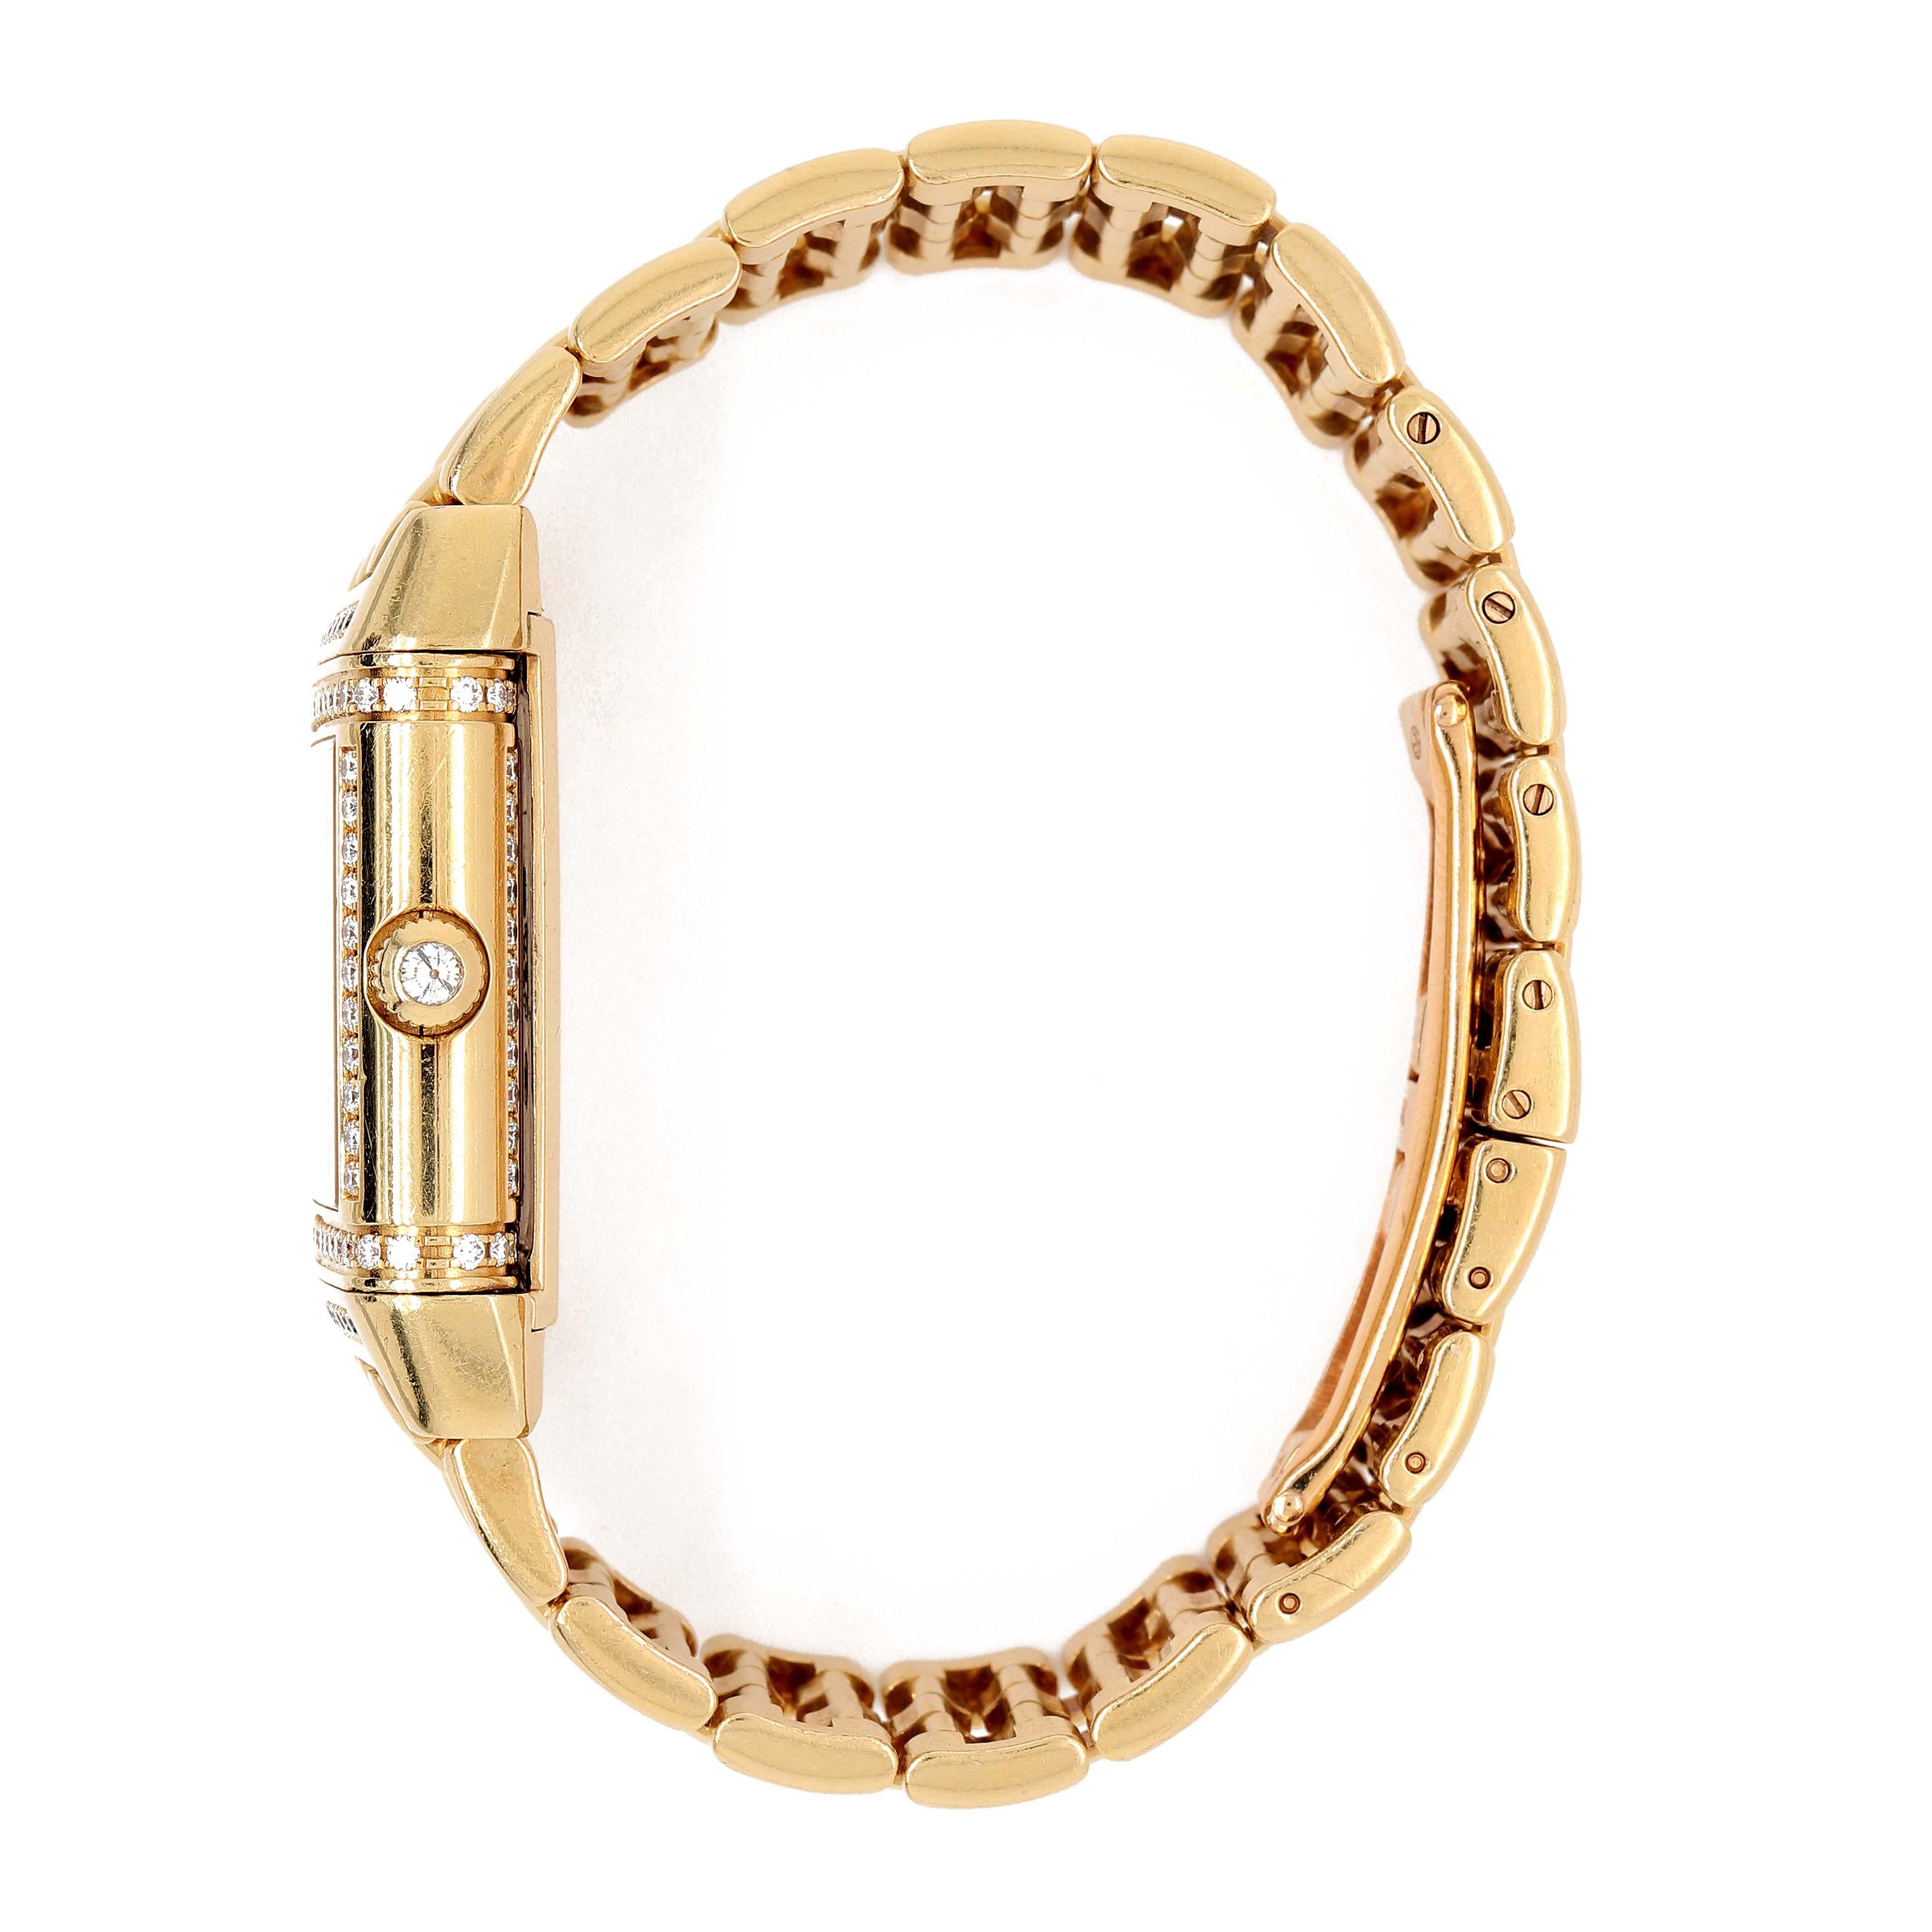  Jaeger-LeCoultre Reverso-Duetto pour dame en or jaune 18 carats. La montre comporte 150 diamants ronds d'environ 1,00 carat d'une pureté VS et d'une couleur D autour des deux côtés de la lunette.  Le poids total de la montre est d'environ 97,00